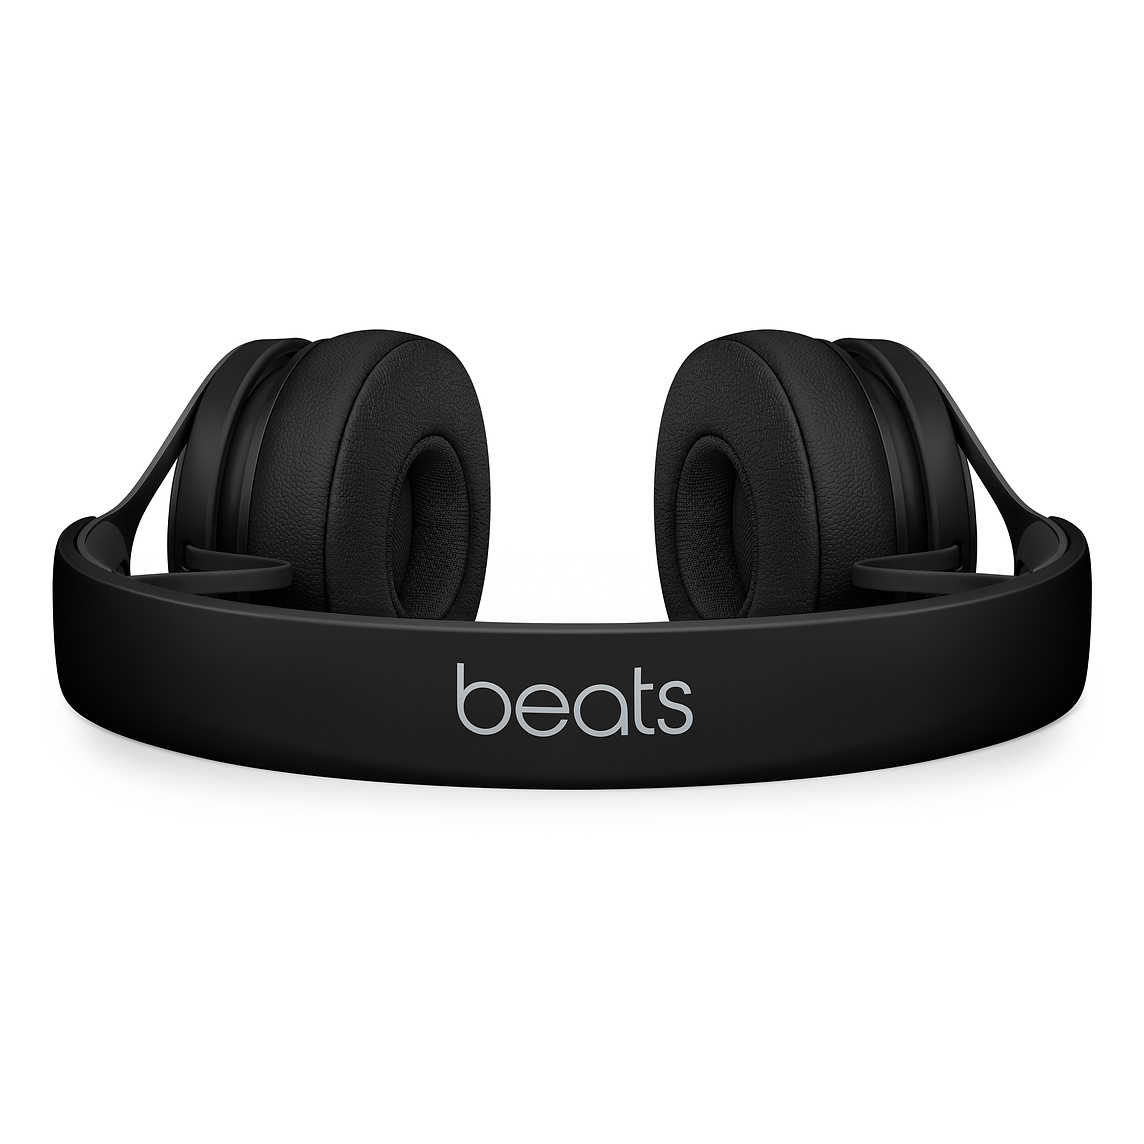 【Beats】EP 黑 耳罩式耳機 含線控可通話 ★ 免運 ★ 送收納袋